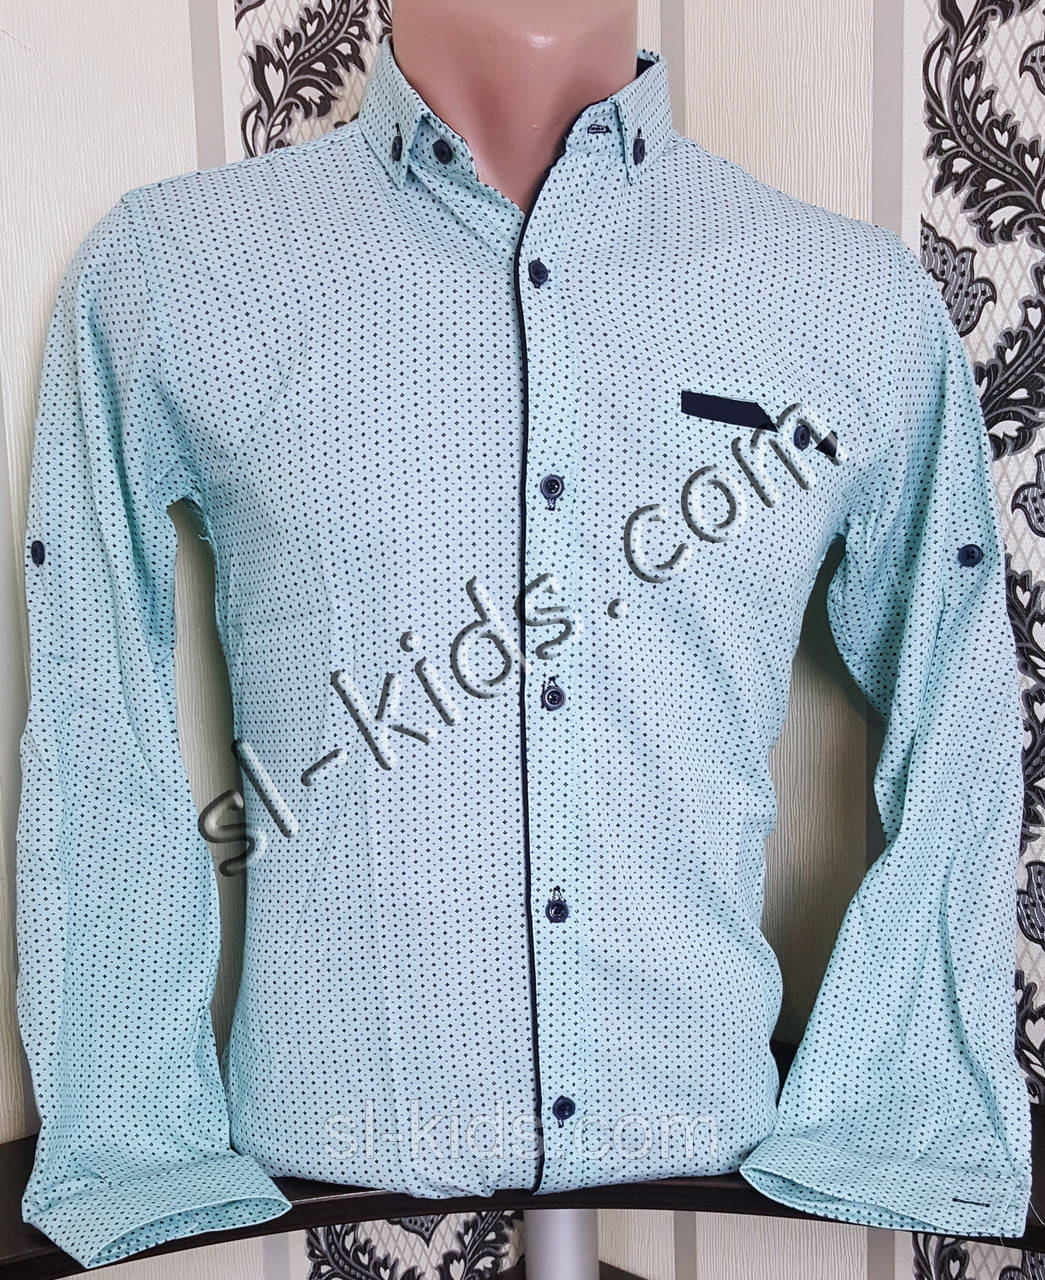 Стрейчева сорочка для хлопчика 6-11 років (розн) (бірюза) (пр. Туреччина)